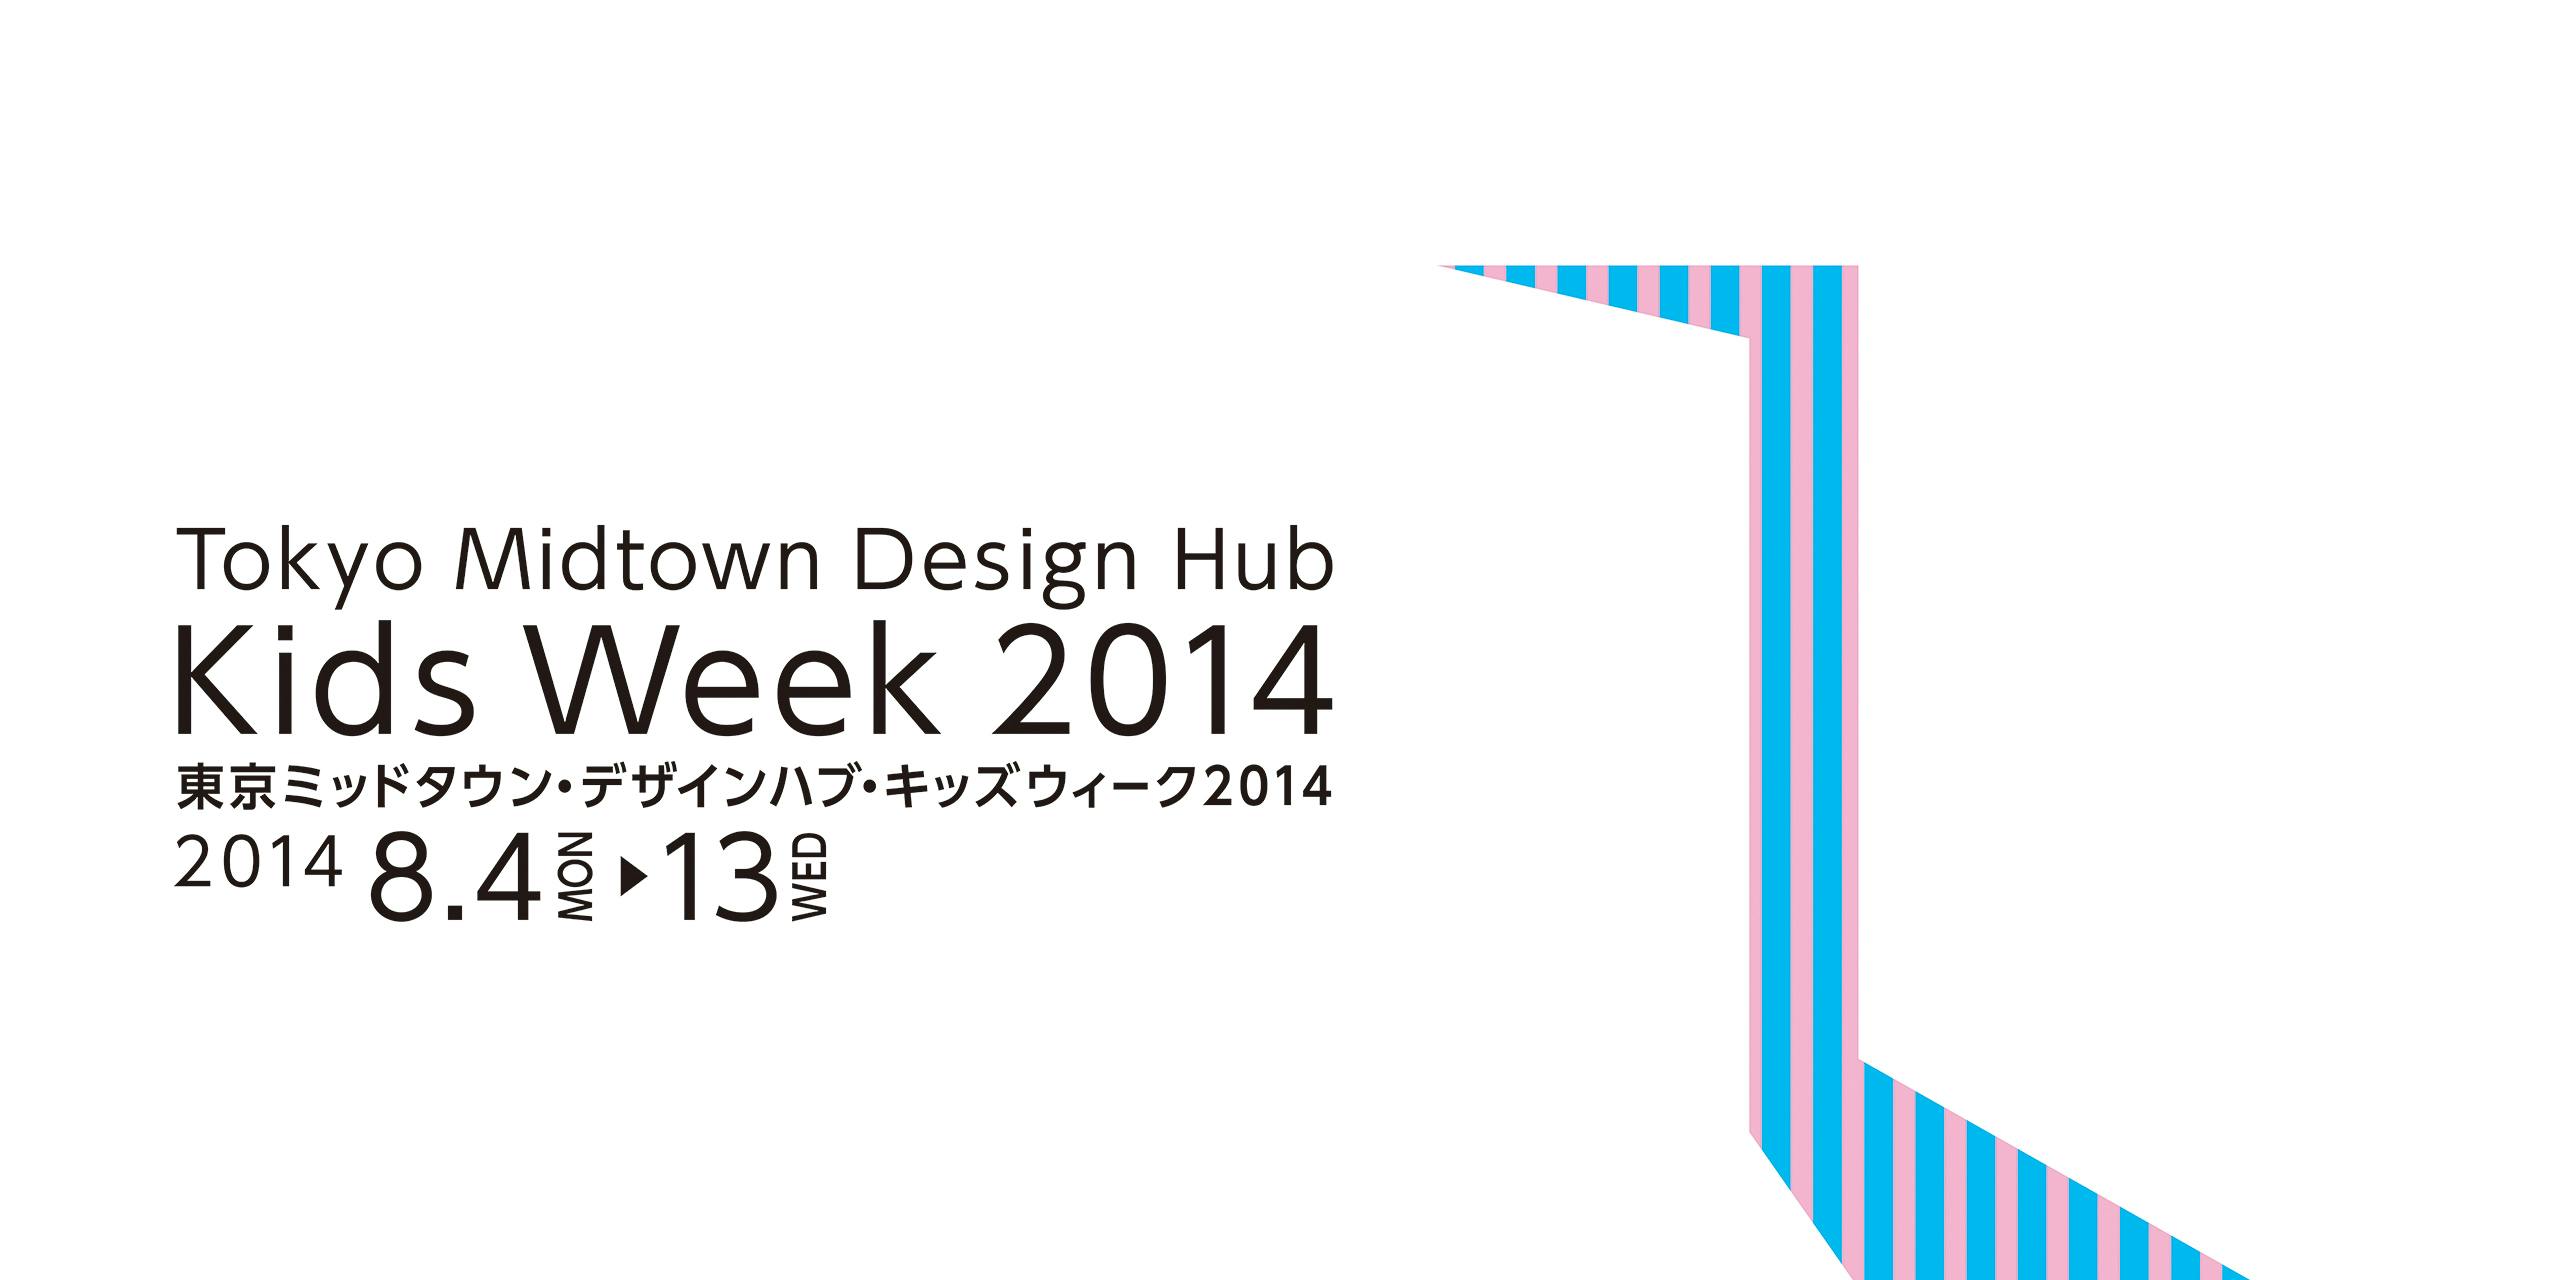 Tokyo Midtown Design Hub Kids Week 2014